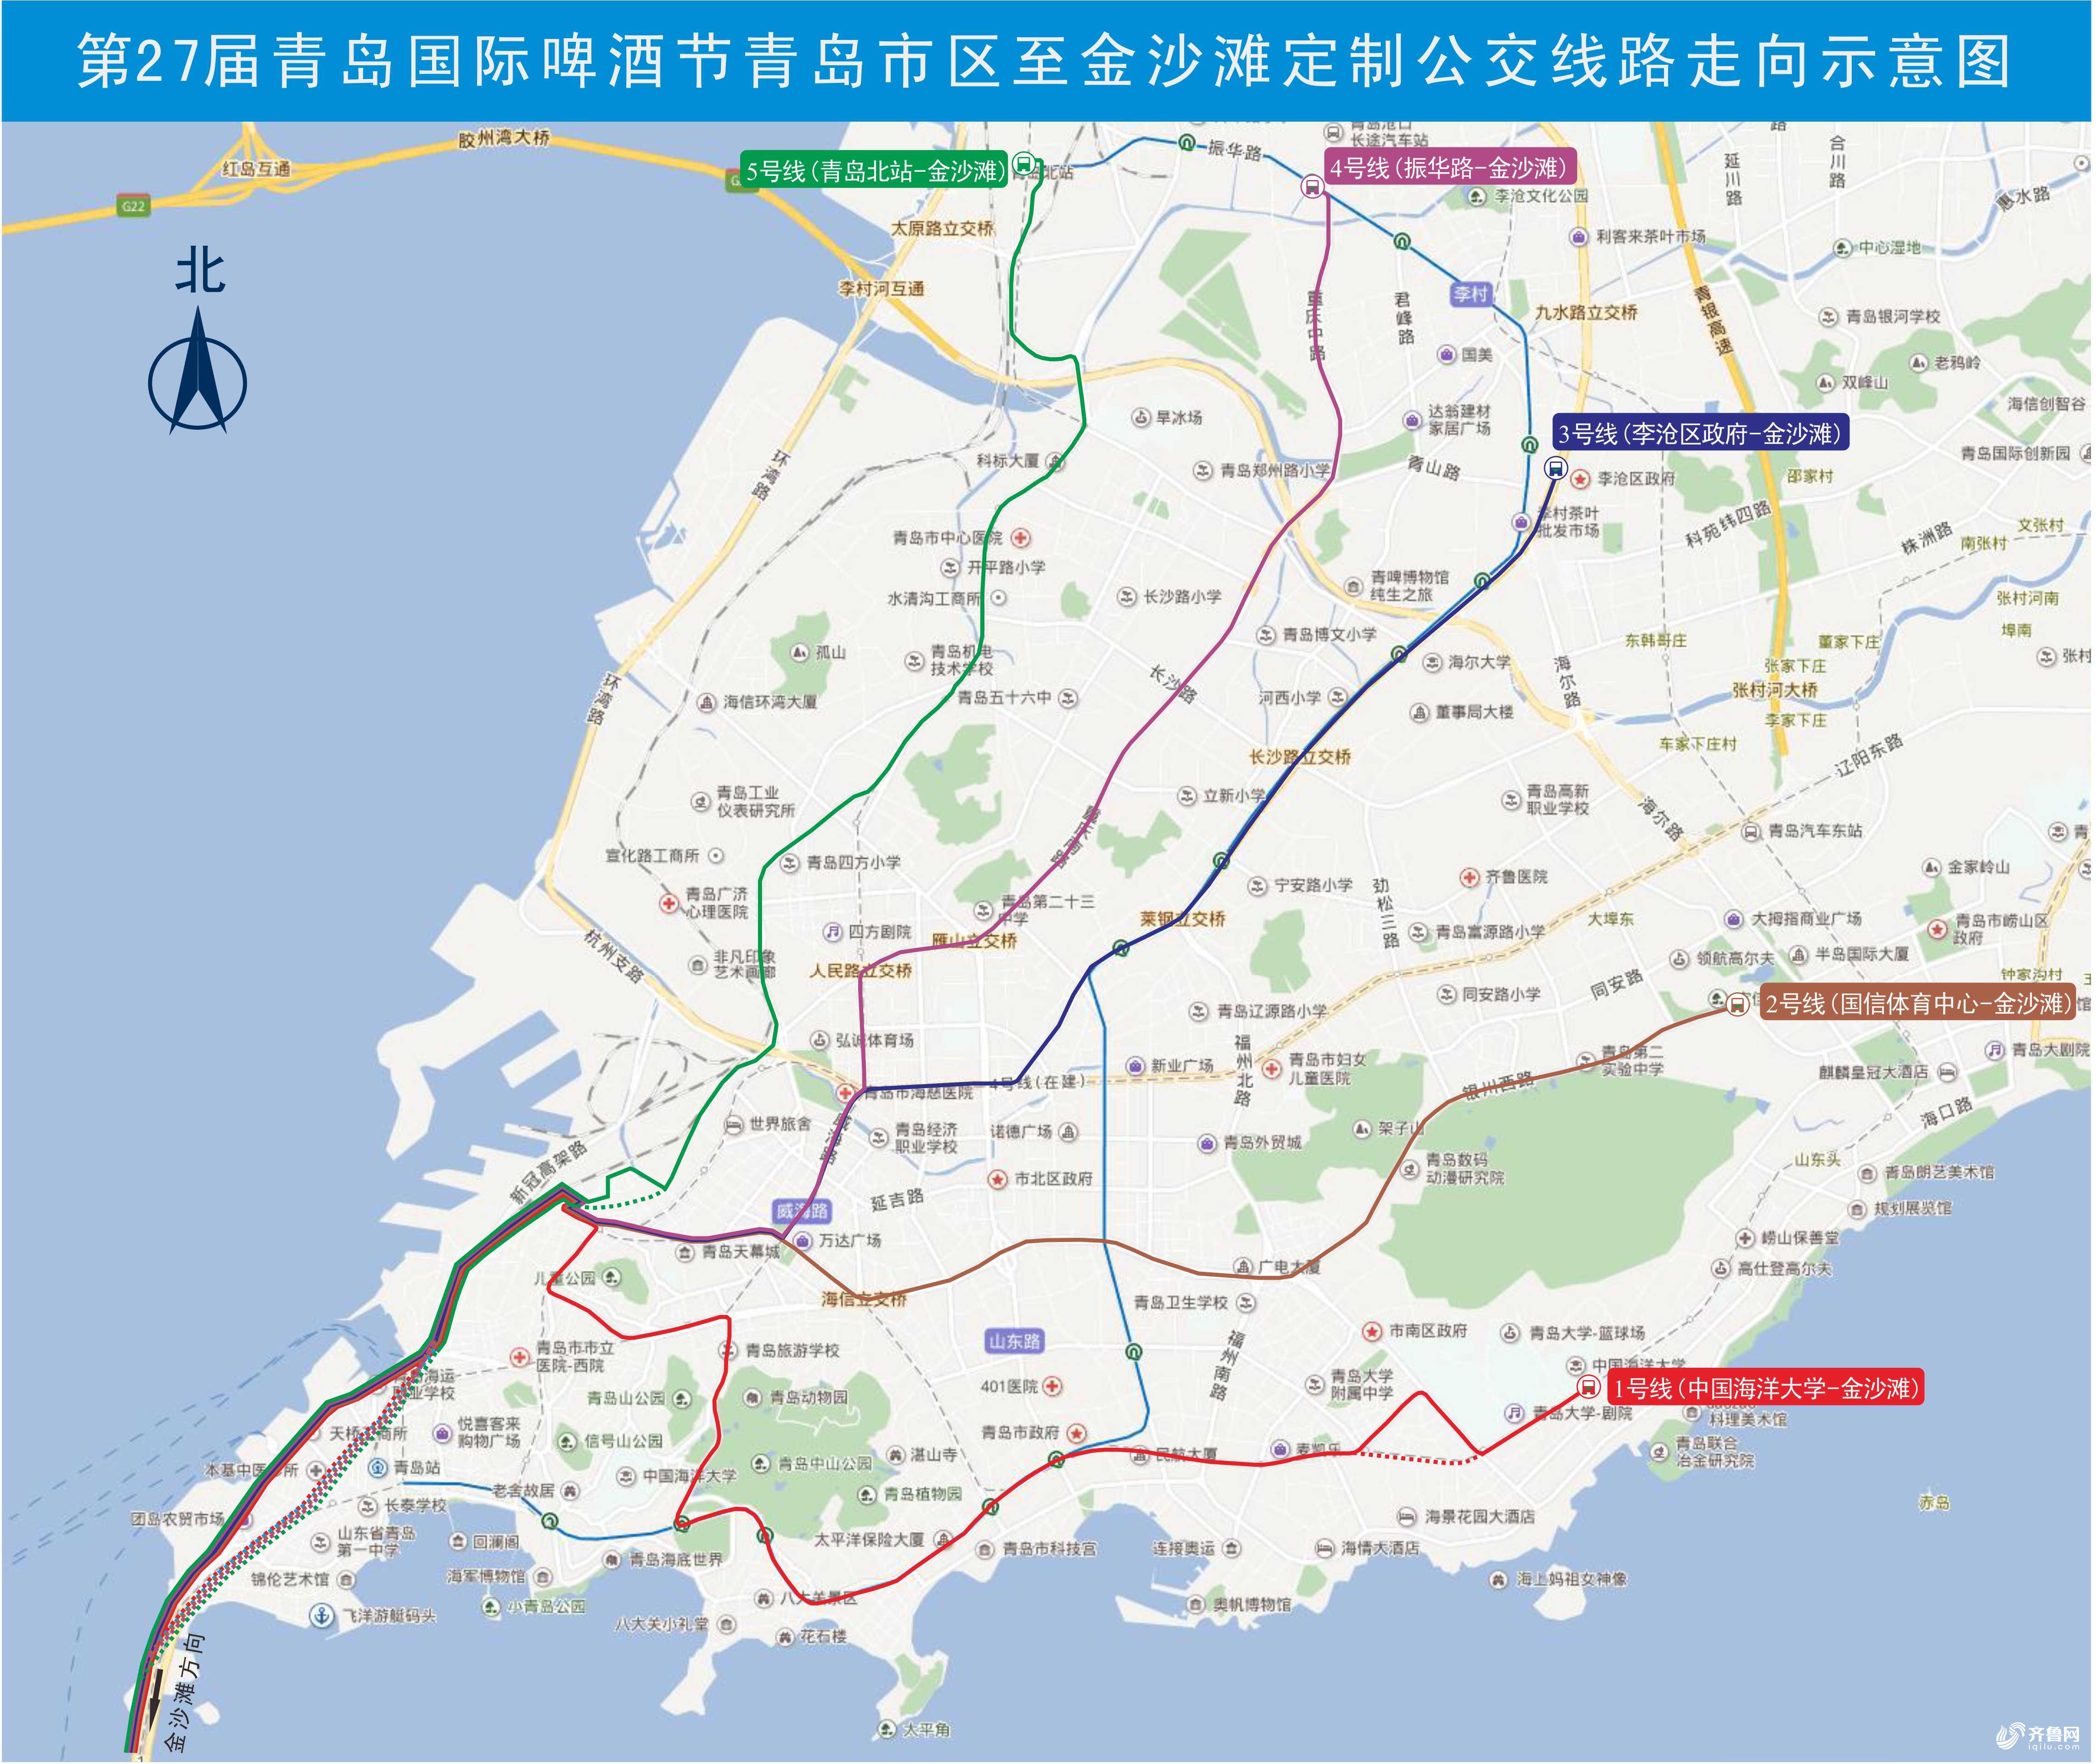 第27届青岛国际啤酒节青岛市区至金沙滩定制公交线路走向示意图.jpg